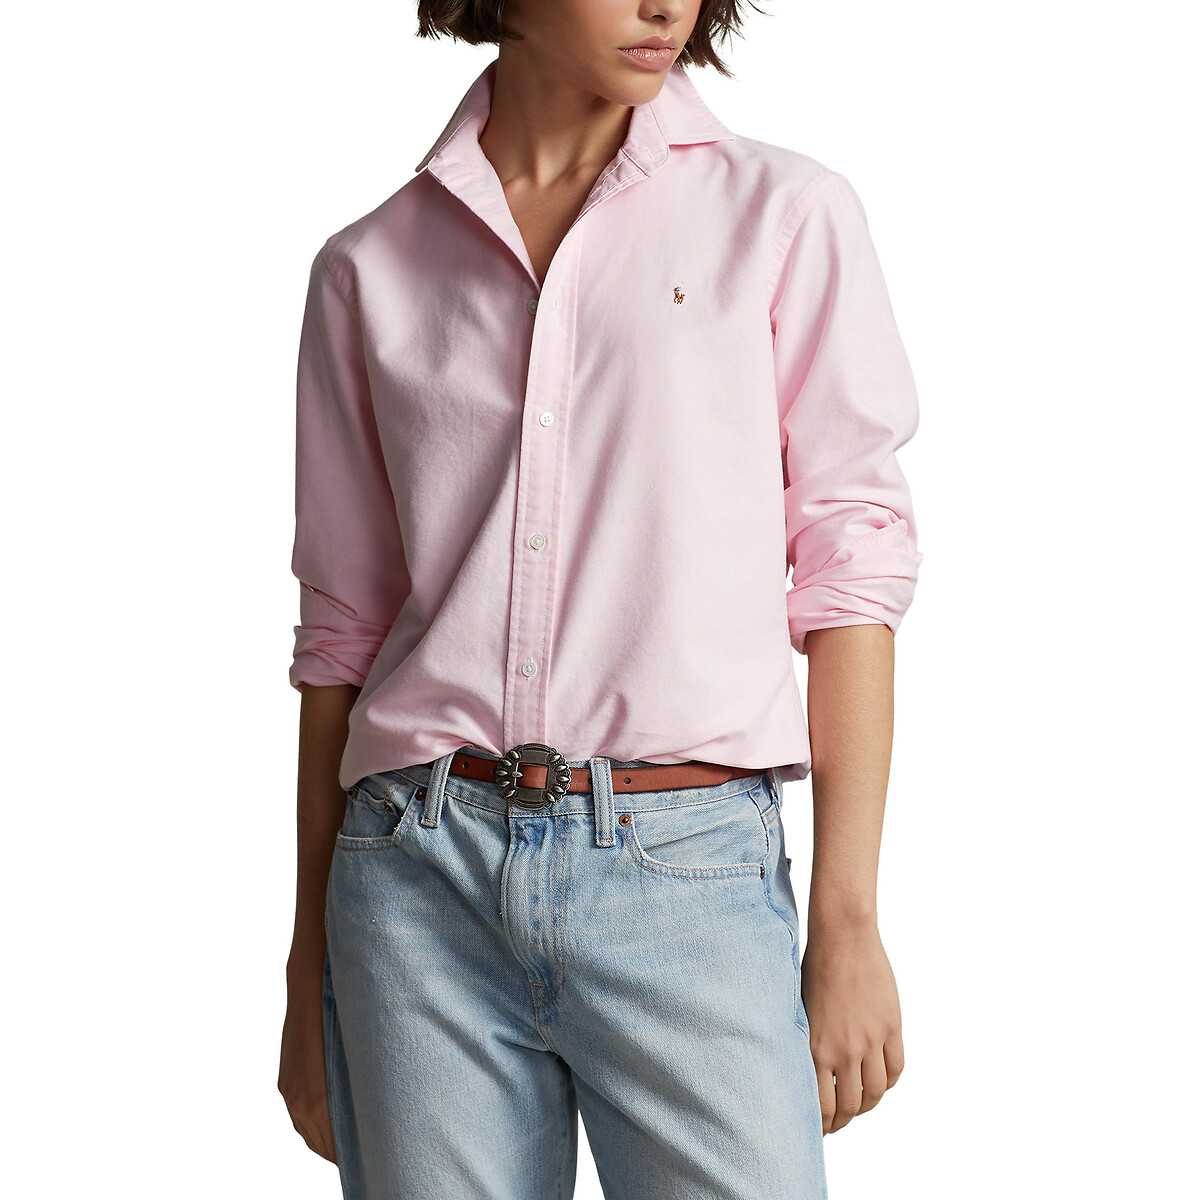 Рубашка Из ткани оксфорд классическая длинные рукава 38 (FR) - 44 (RUS) розовый